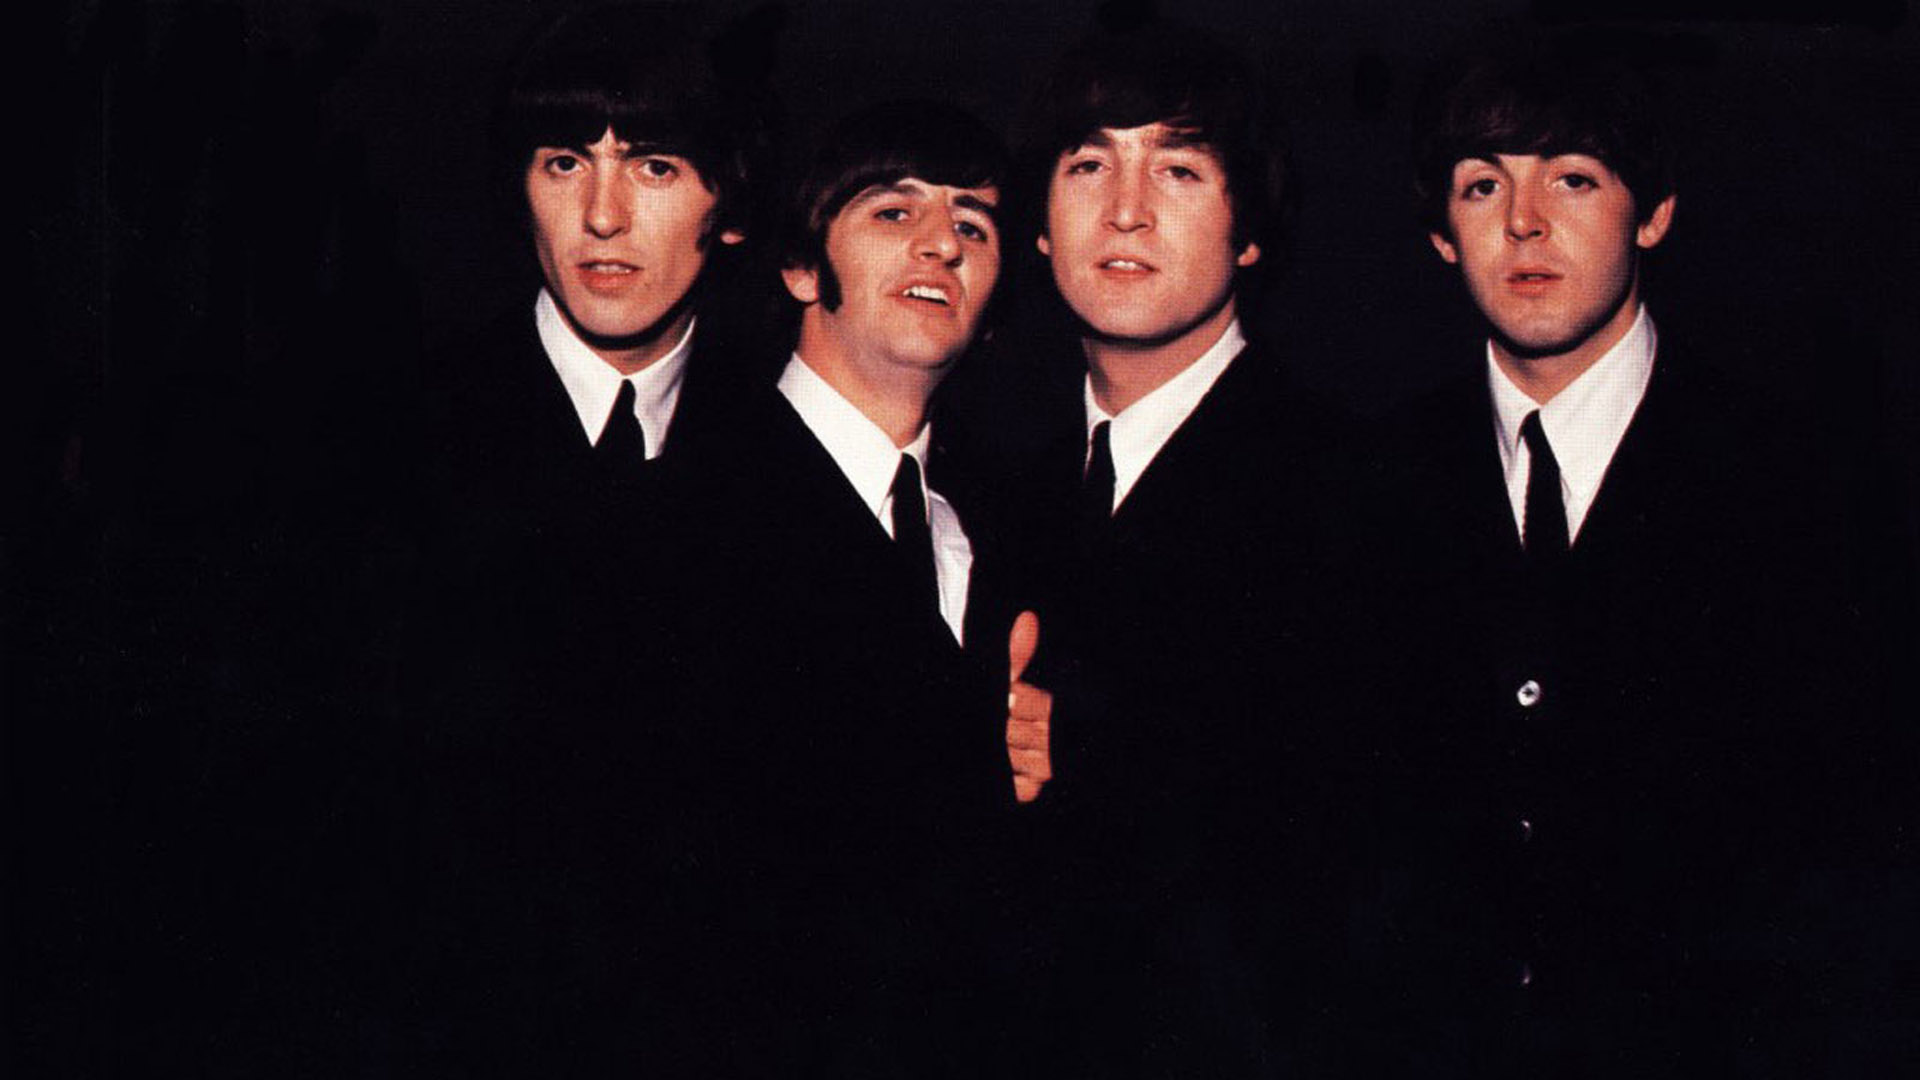 The Beatles Desktop 1920x1080 Wallpapers 1920x1080 Wallpapers